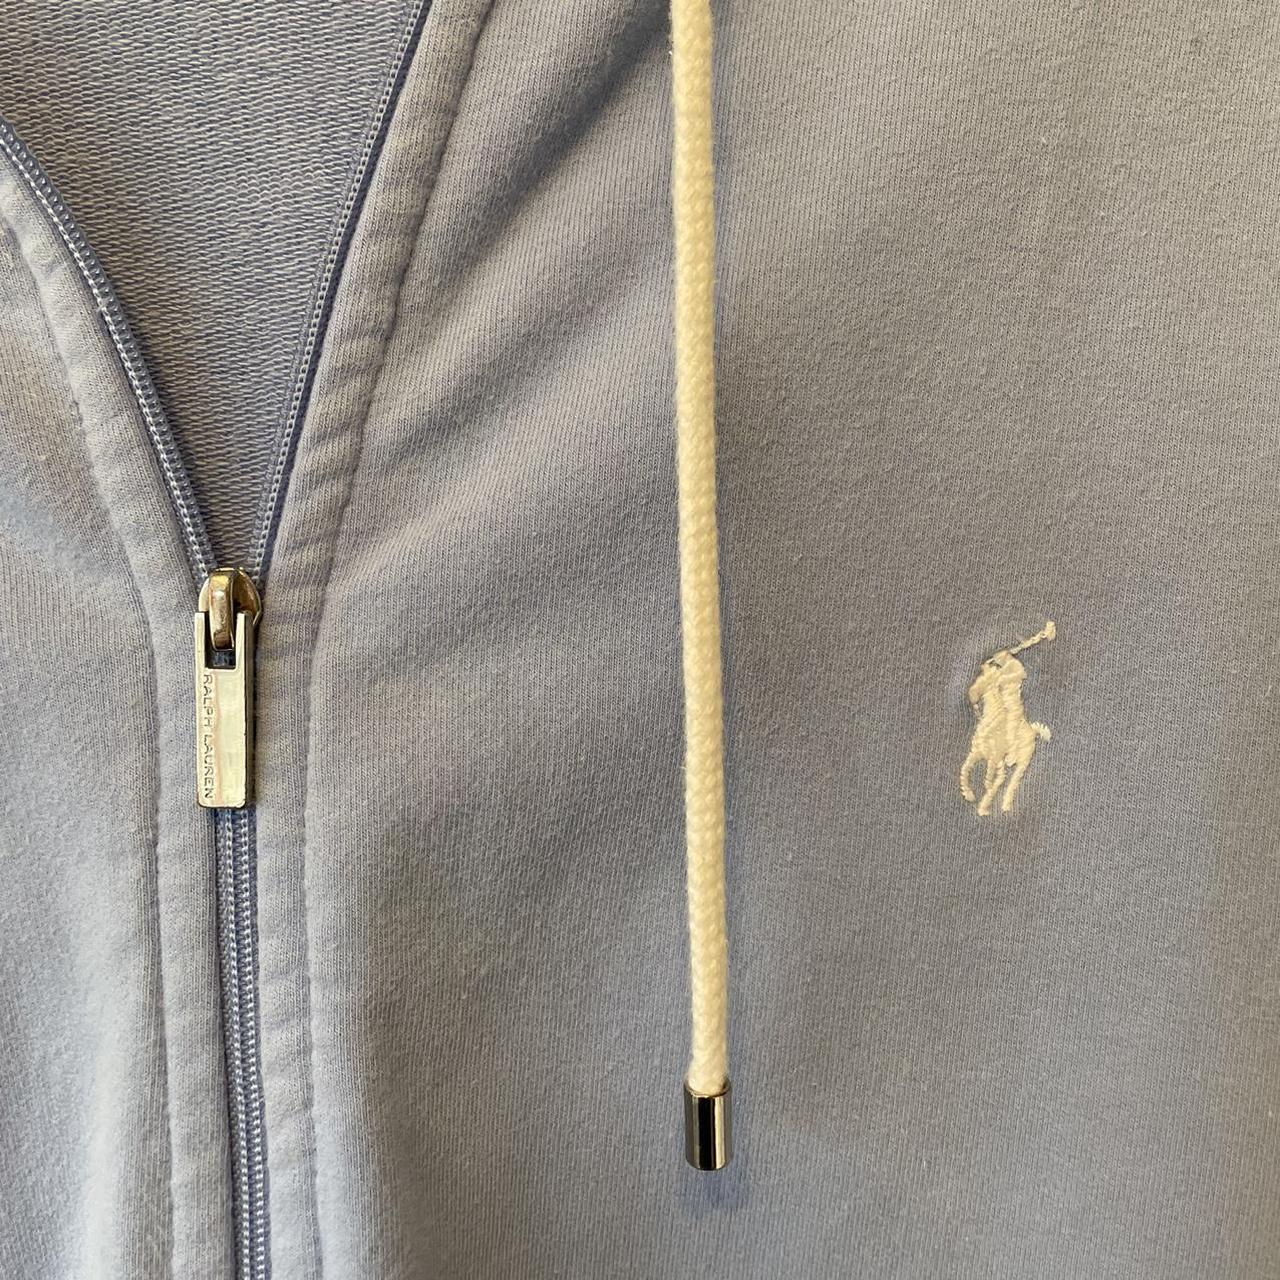 Ralph Lauren zip up hoodie, baby blue with white... - Depop